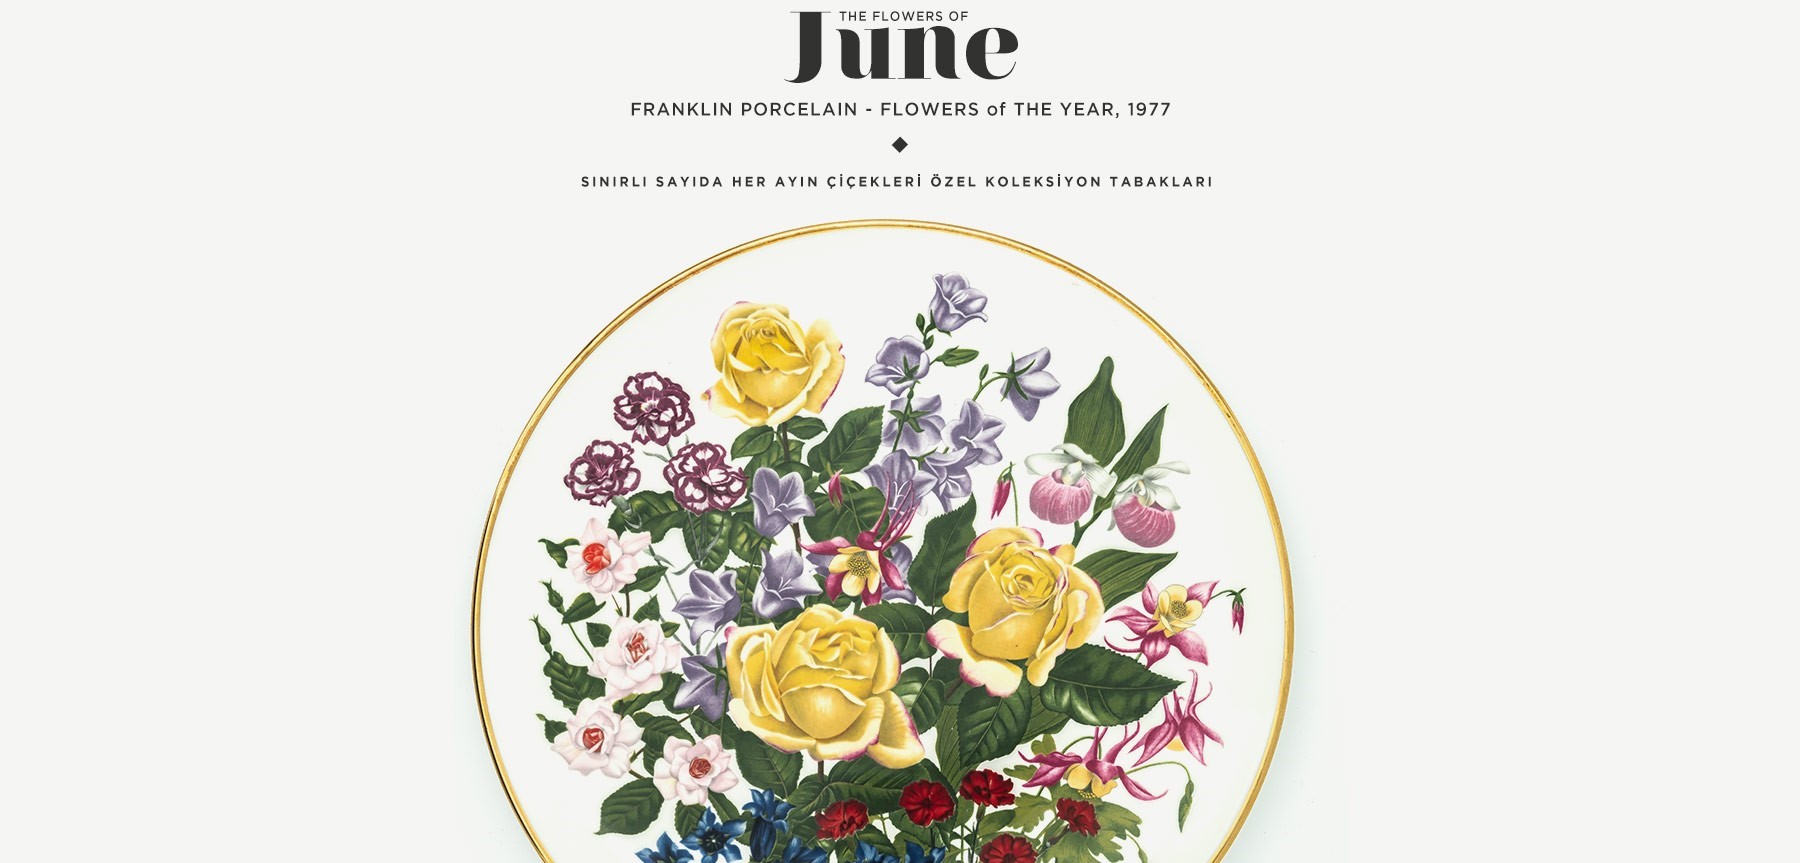 Haziran'da Açan Çiçekler The Flowers Of June'in resmi